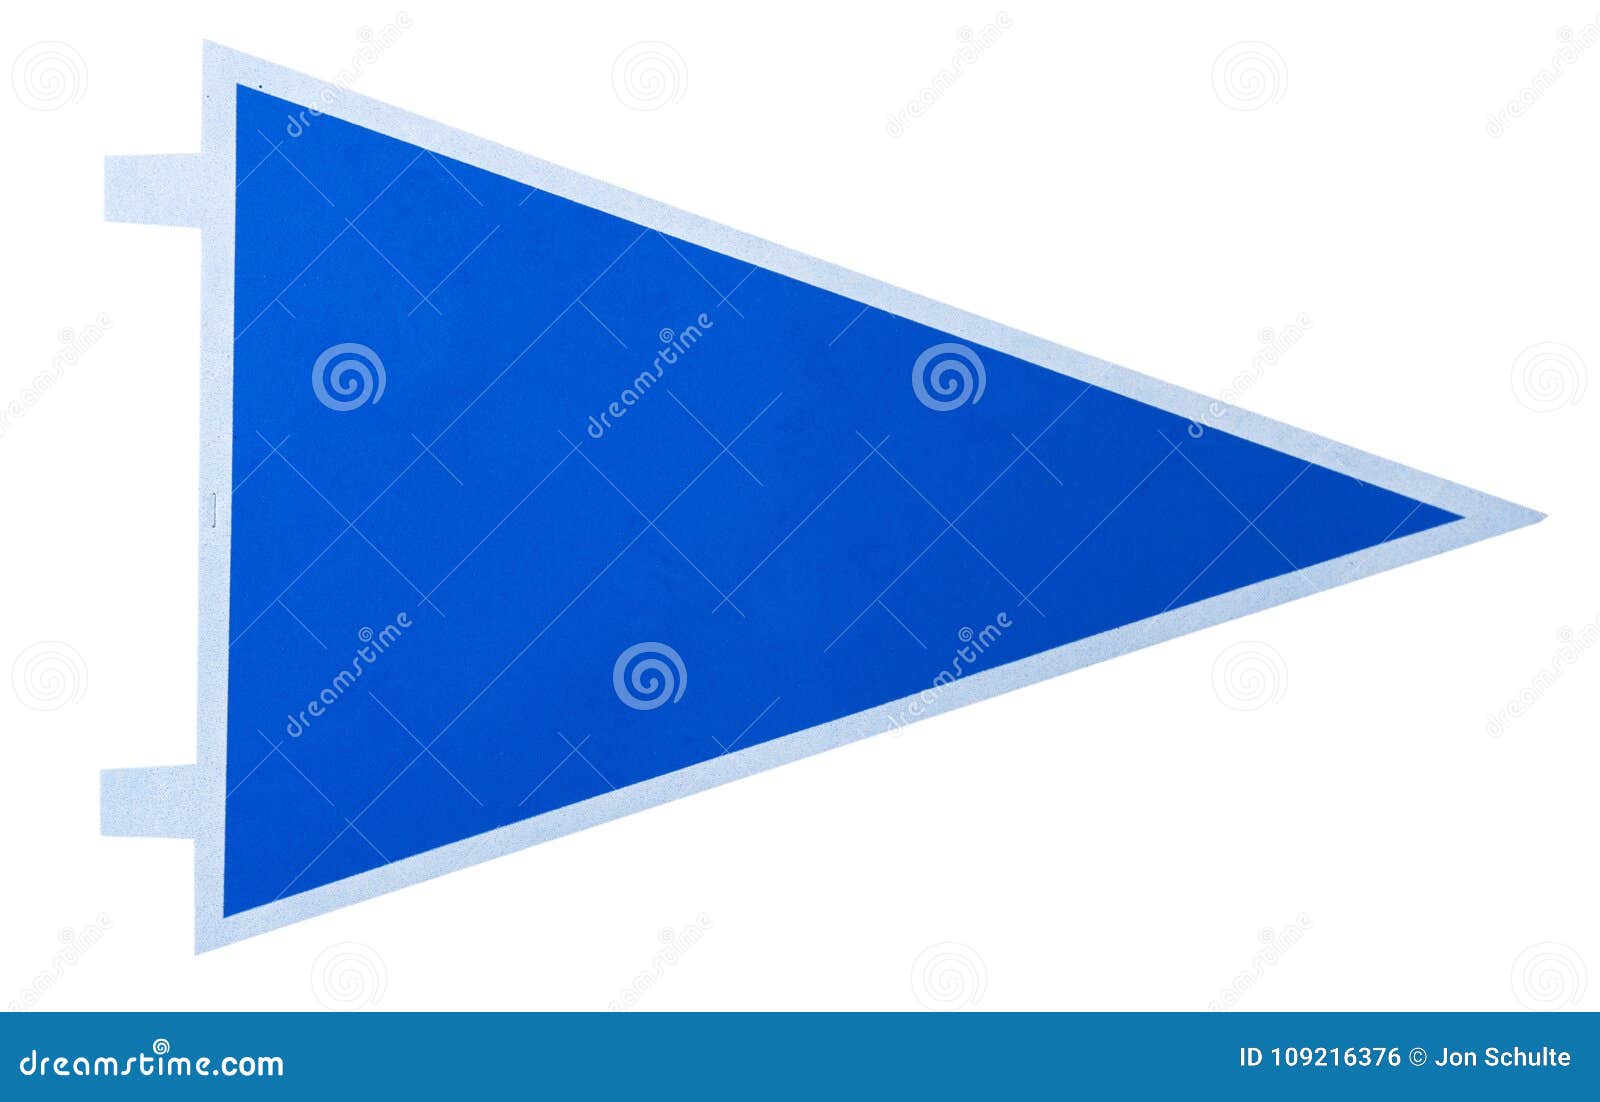 a blank blue pennant